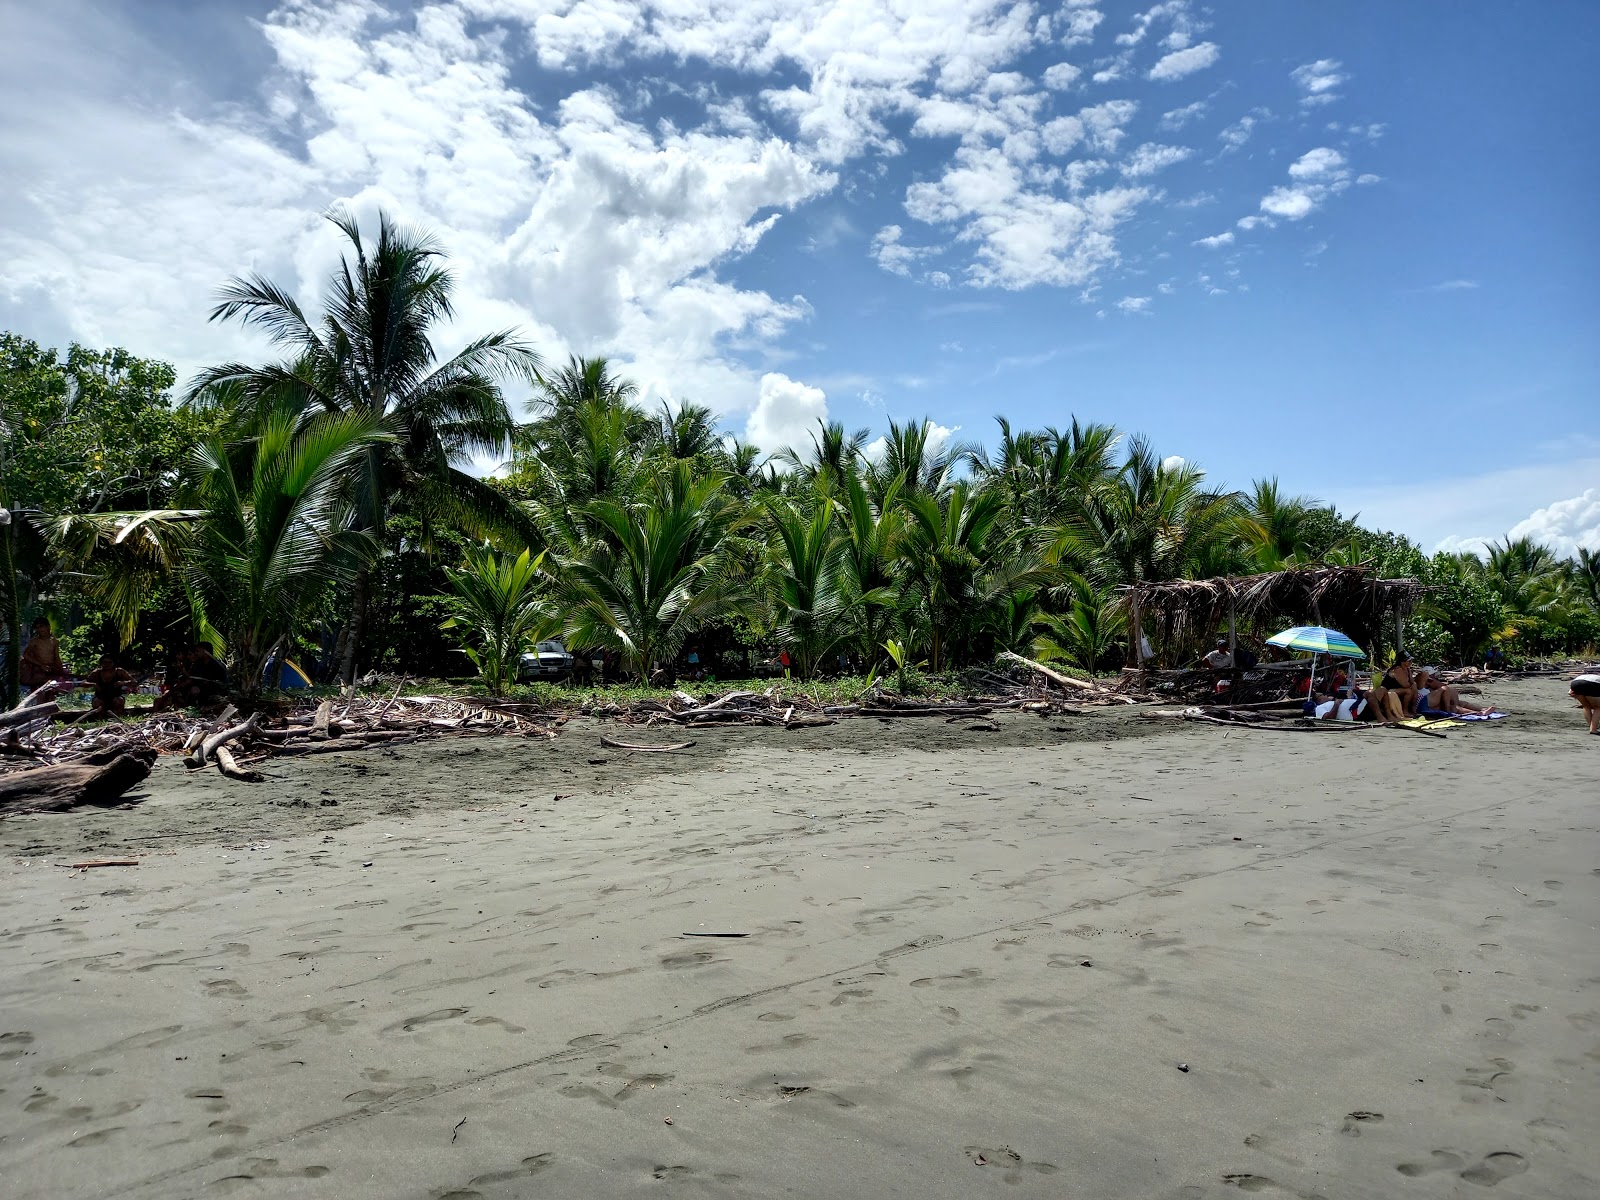 Playa Zancudo'in fotoğrafı ve yerleşim